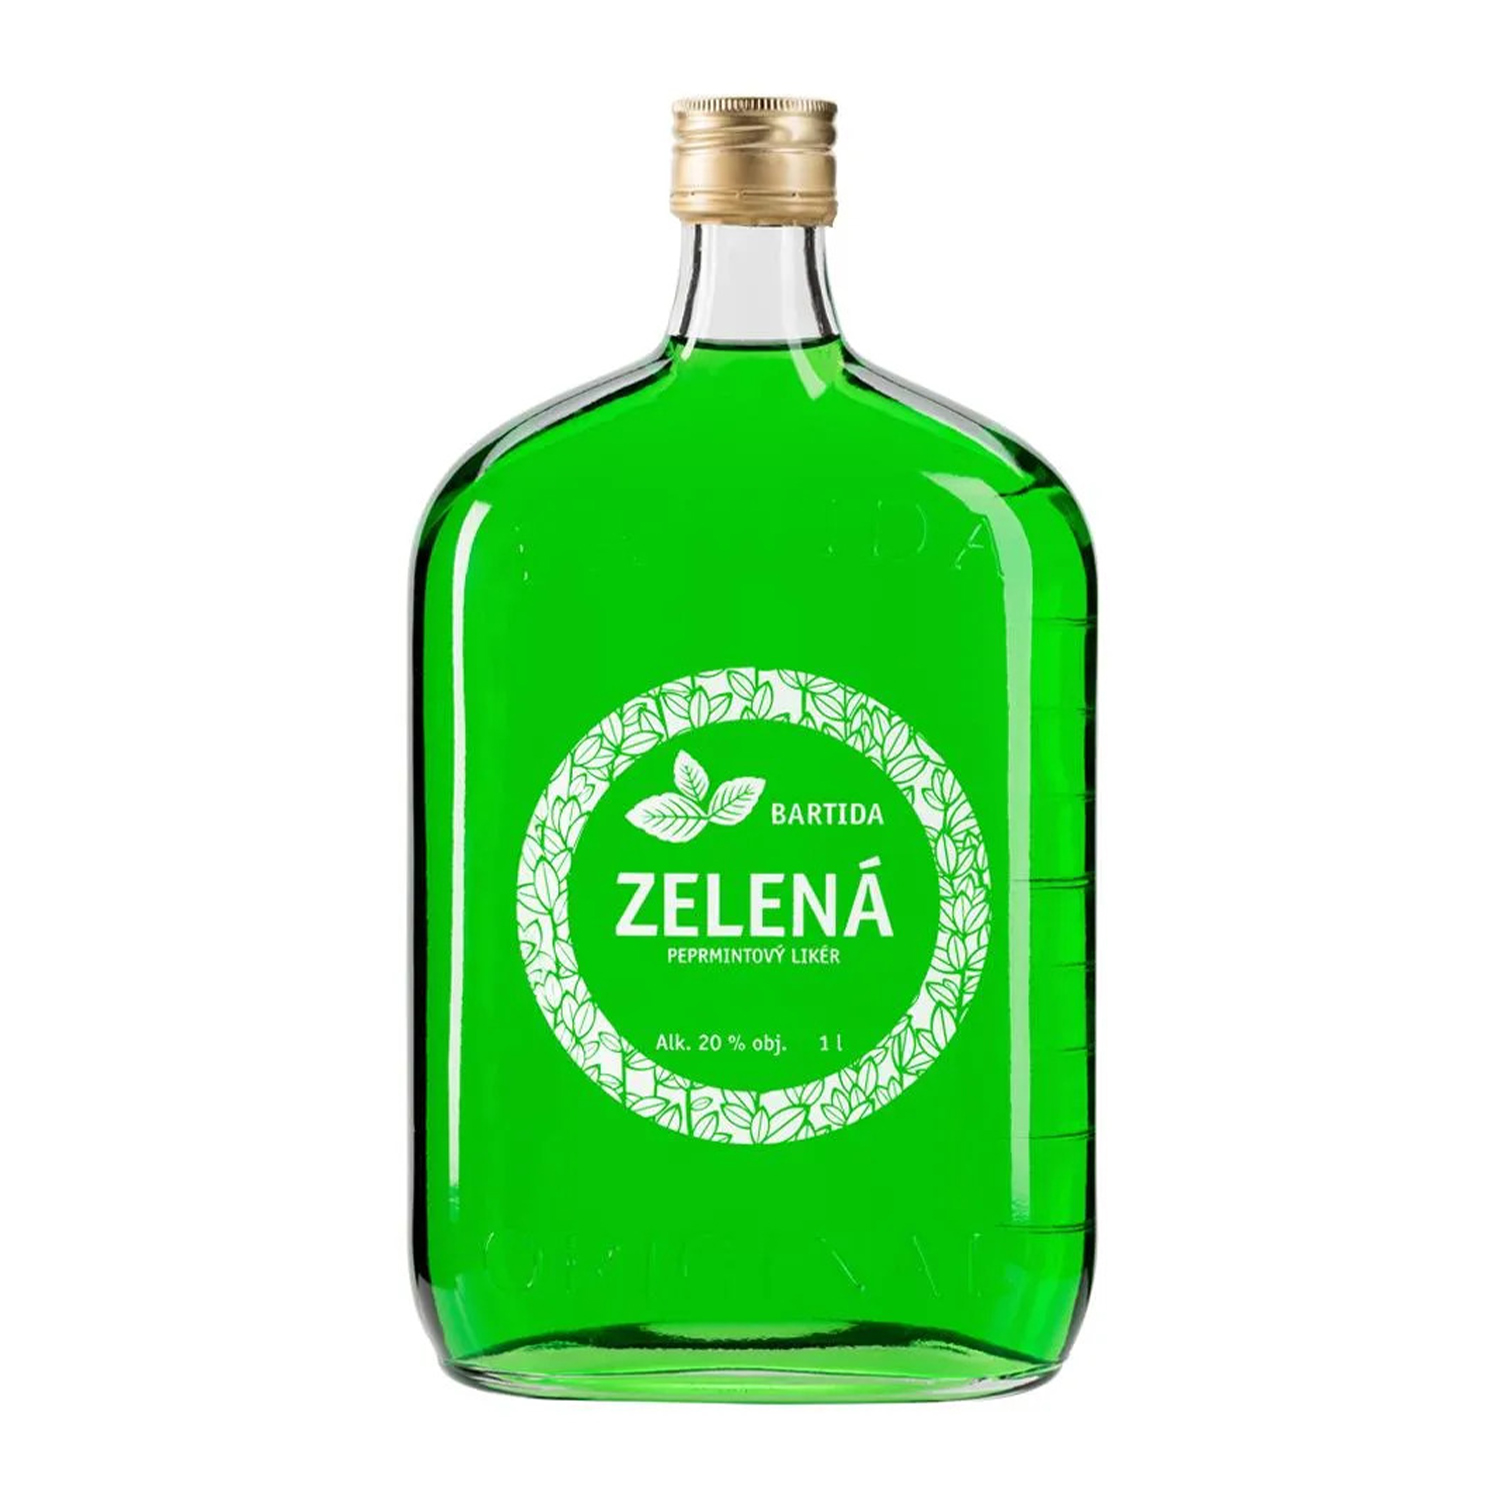 Bartida Zelená peprmintový likér 20% 1L